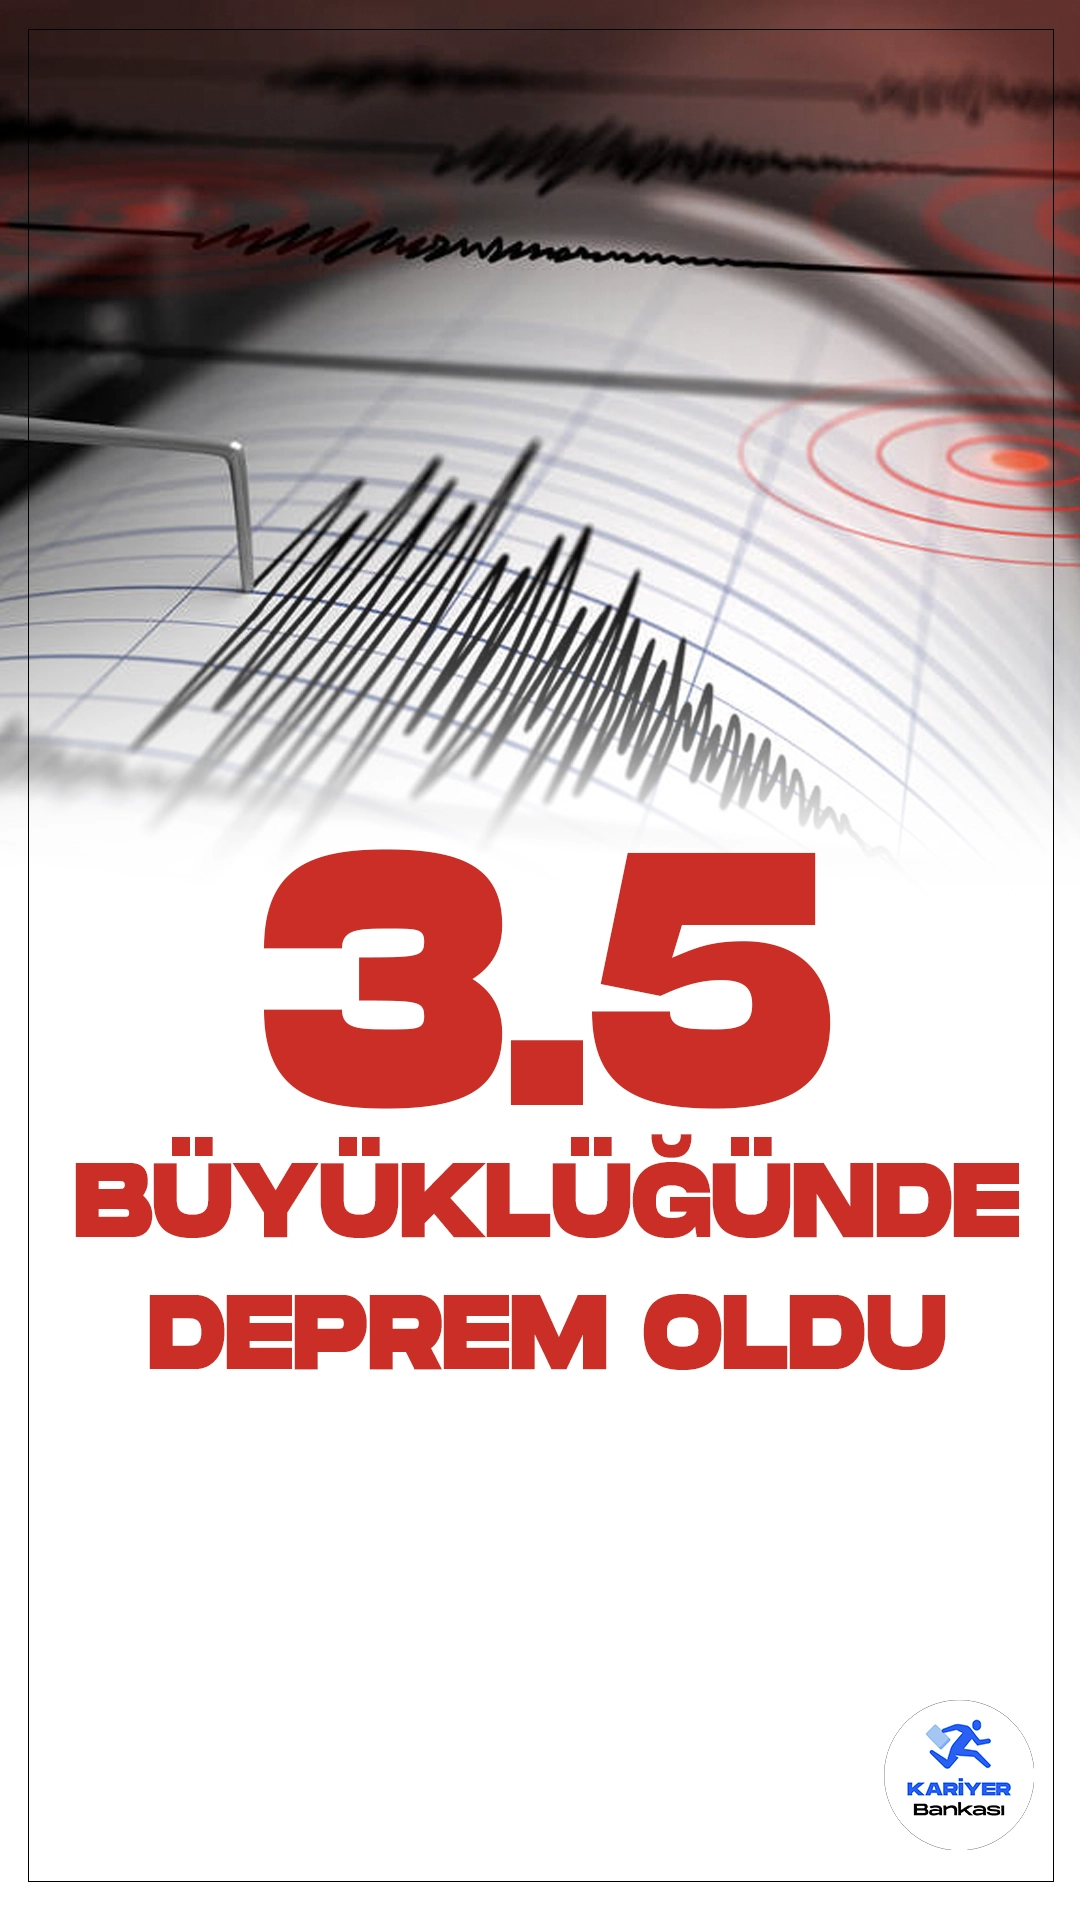 Balıkesir'de 3.5 Büyüklüğünde Deprem Oldu. Boğaziçi Üniversitesi Kandilli Rasathanesi ve Deprem Araştırma Enstitüsü tarafından yayımlanan son dakika verilerine göre, Balıkesir Adaören-Dursunbey'de 3.5 büyüklüğünde deprem meydana geldi.